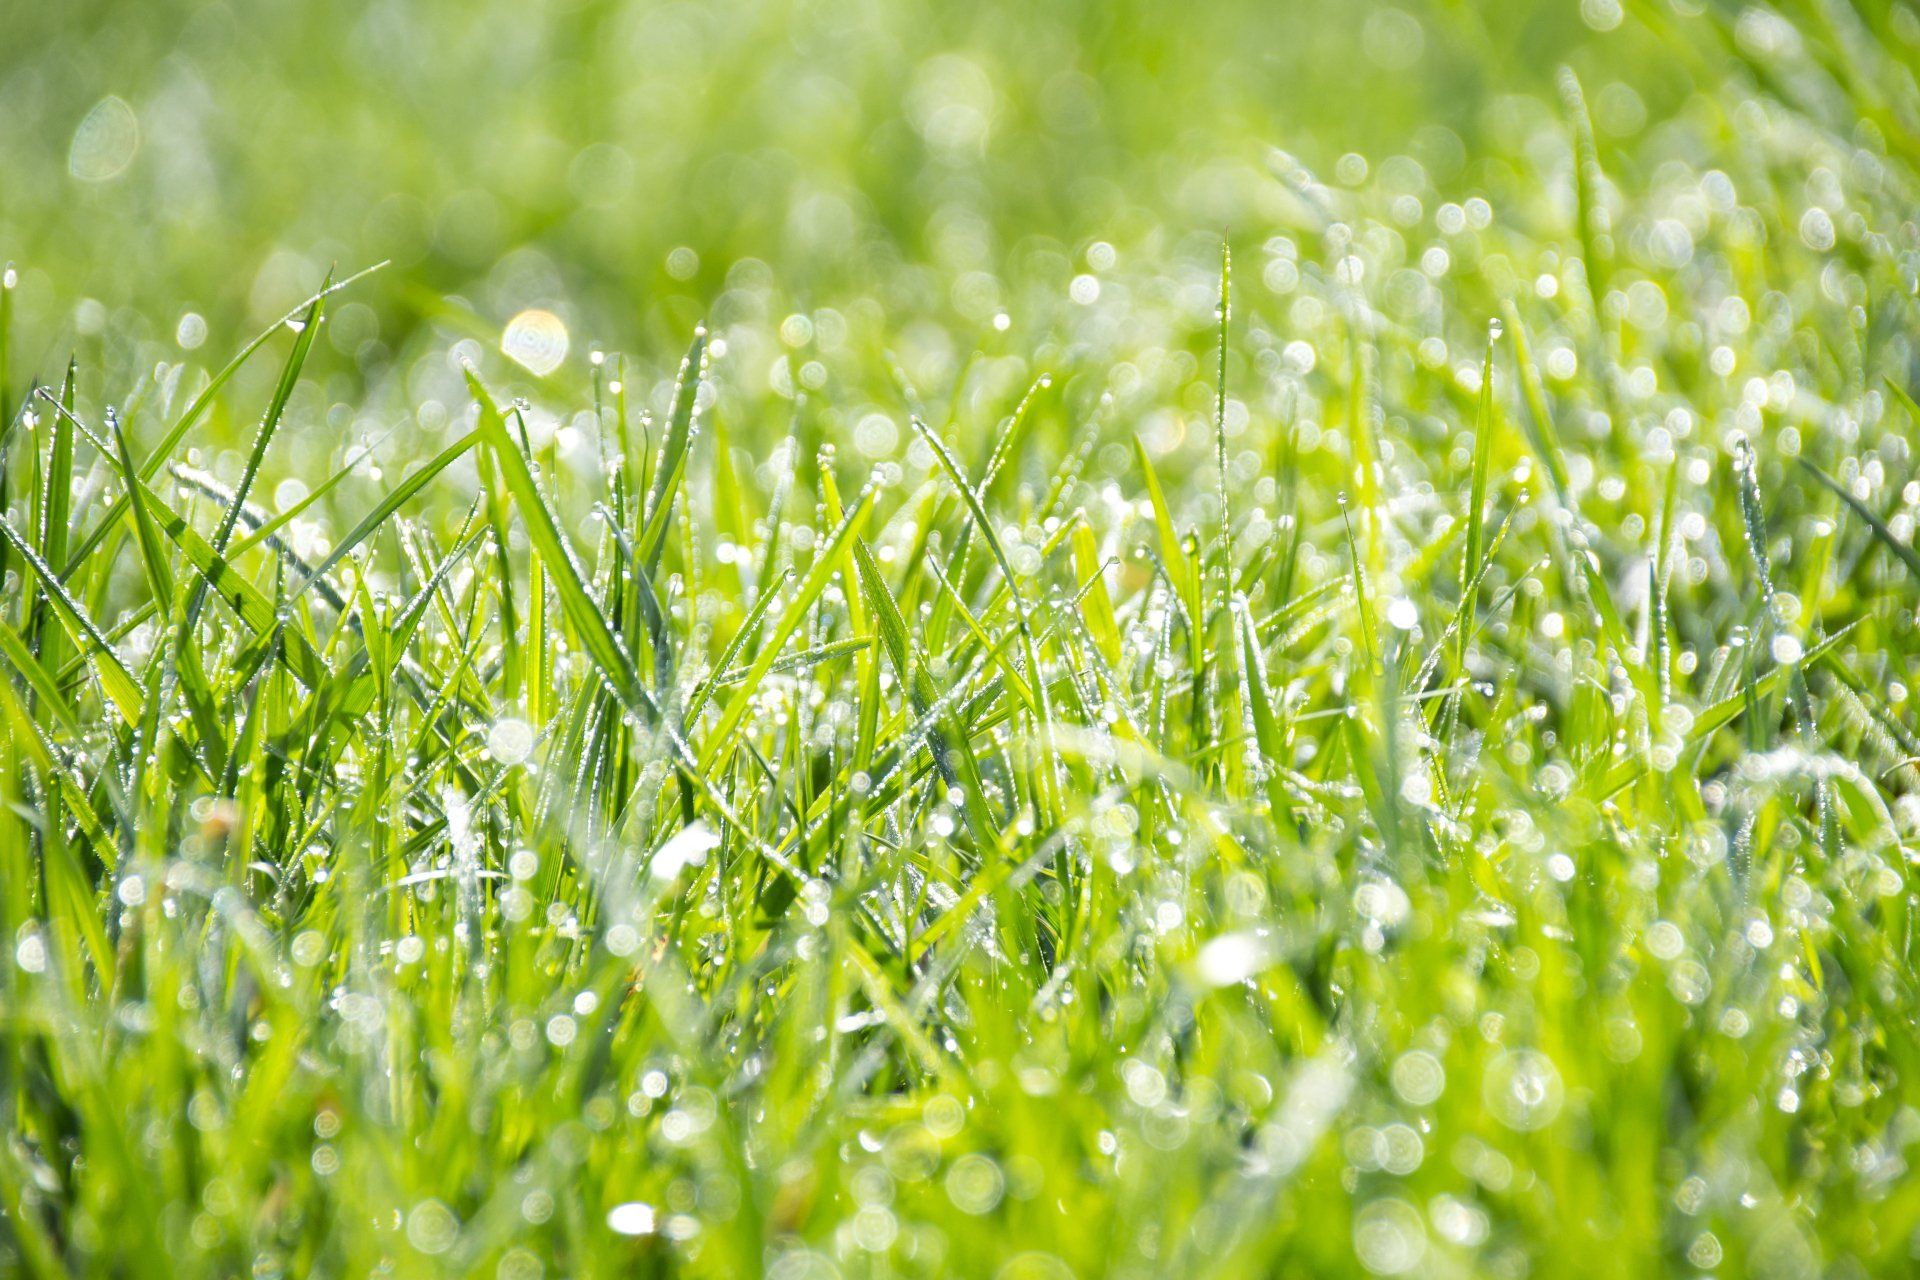 wet grass lawn